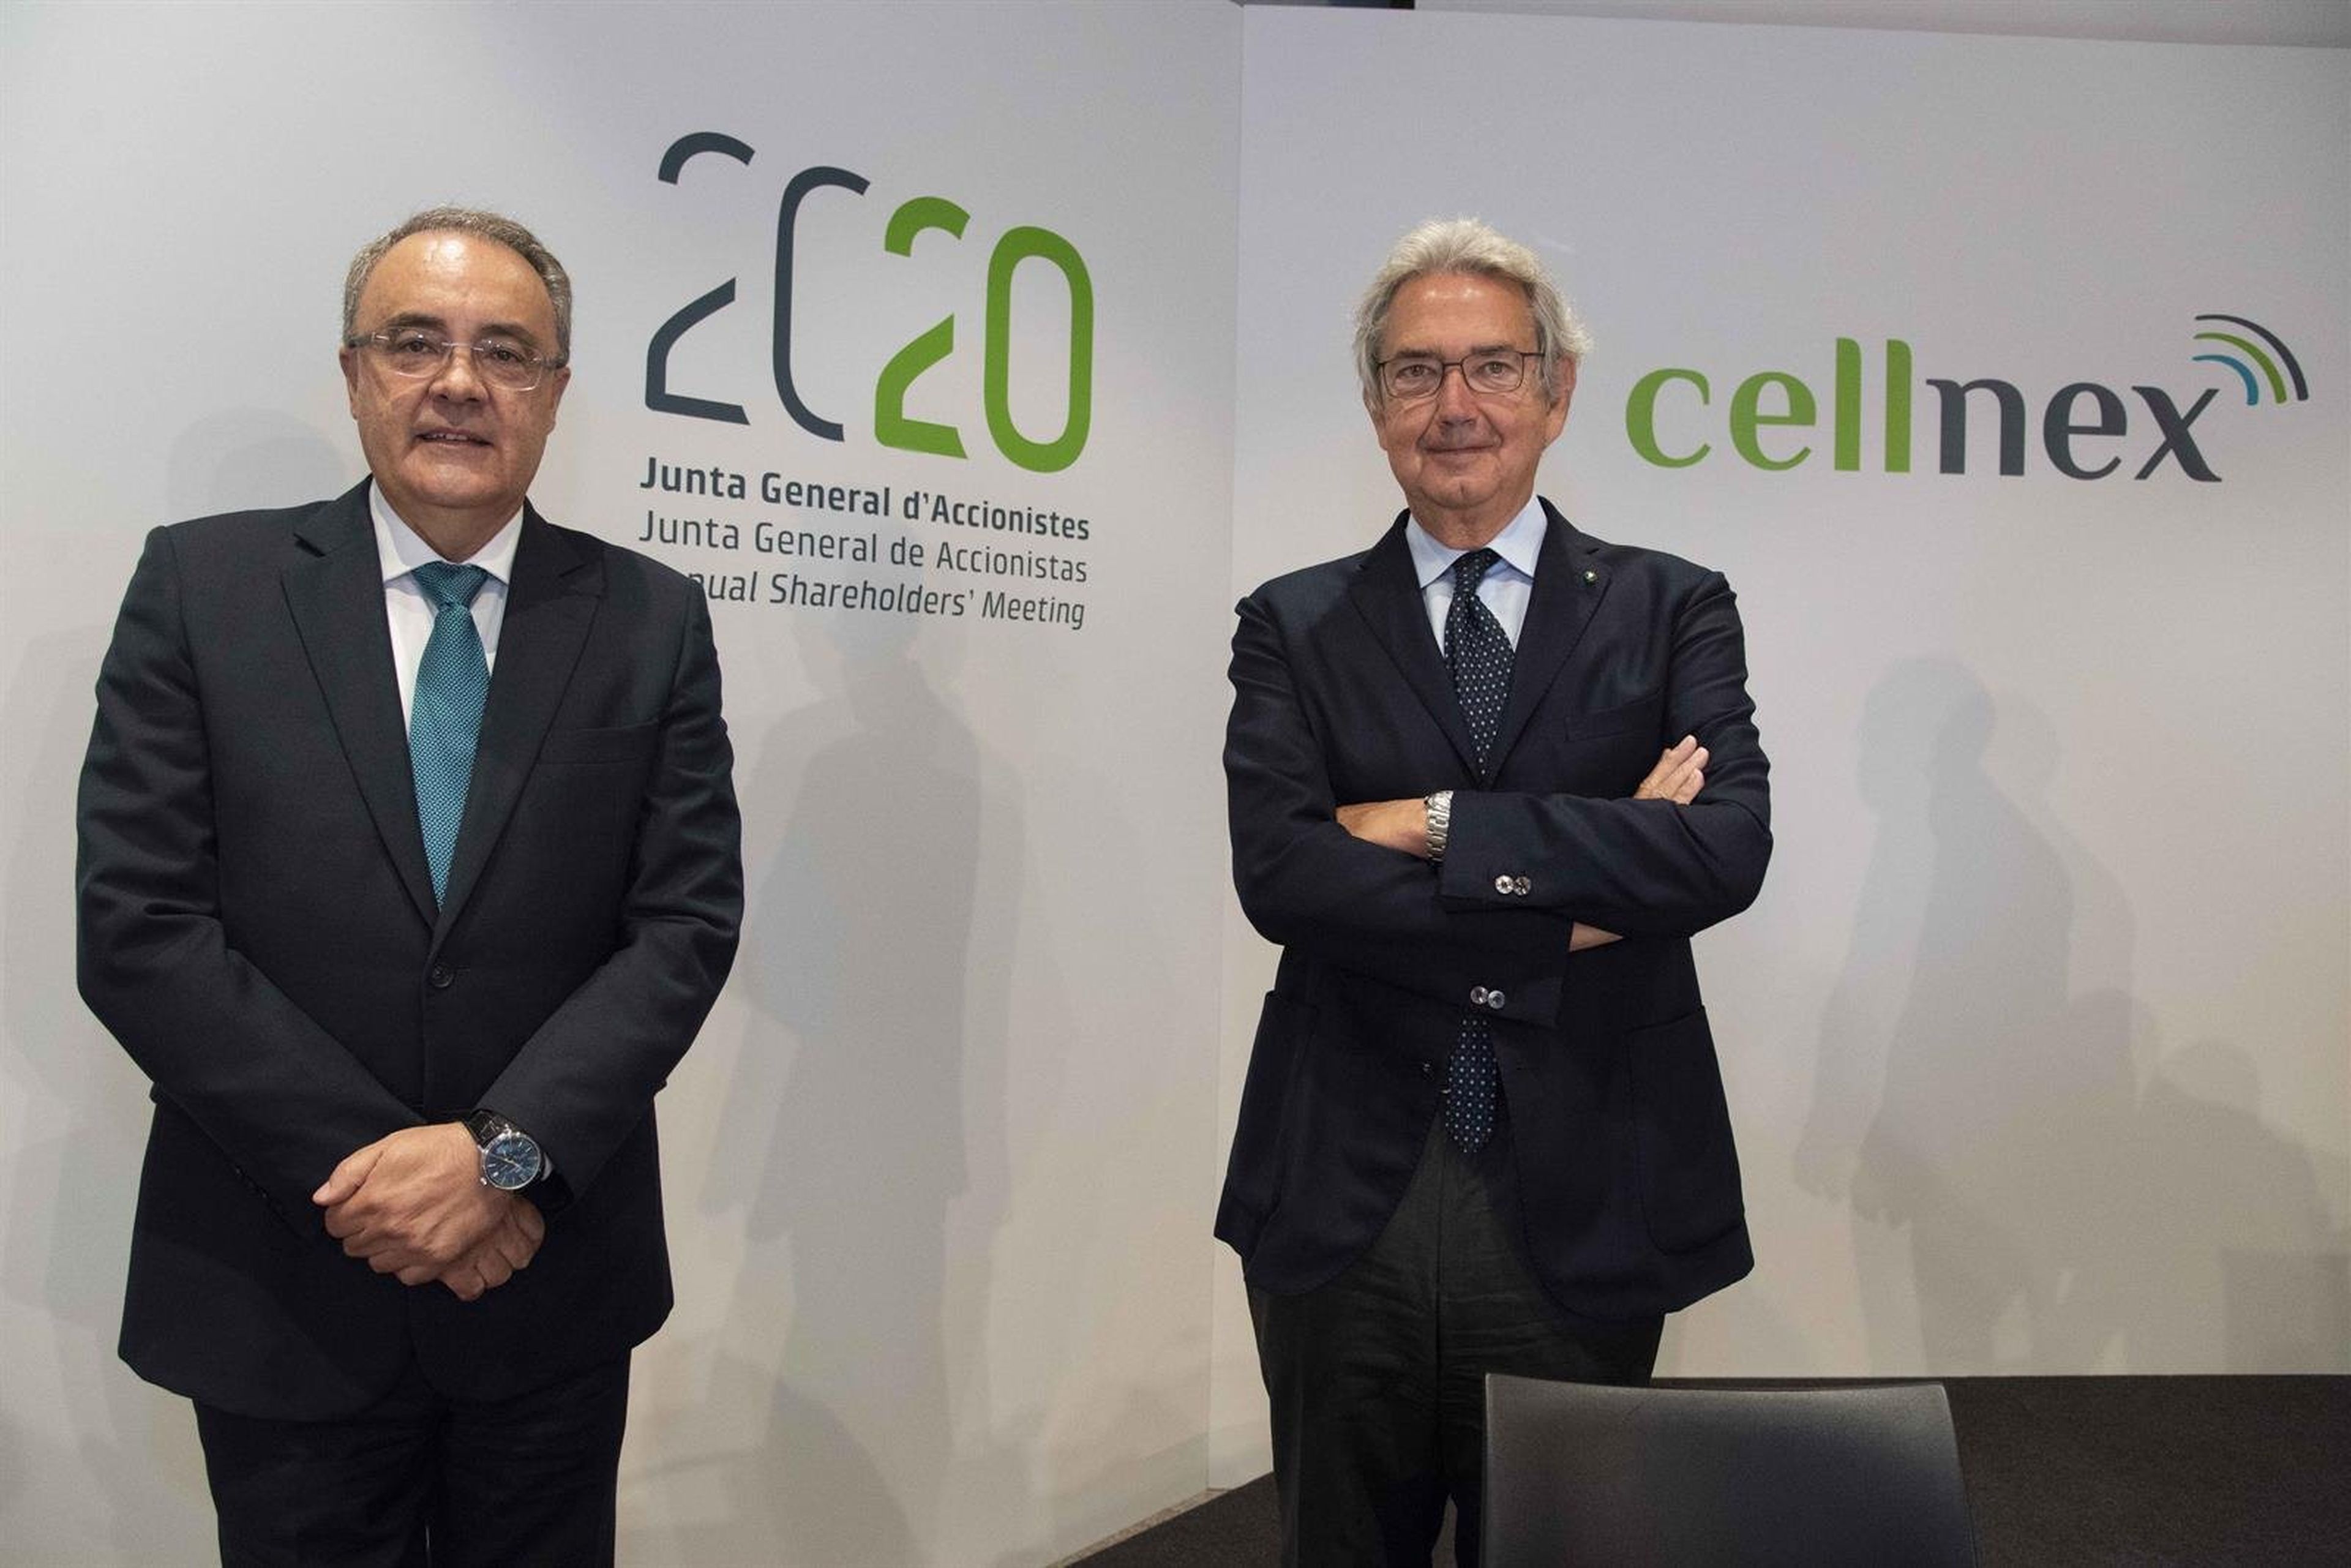 El consejero delelgado de Cellnex Telecom, Tobías Martínez, y el presidente, Franco Bernabè, en la junta de accionistas de 2020.